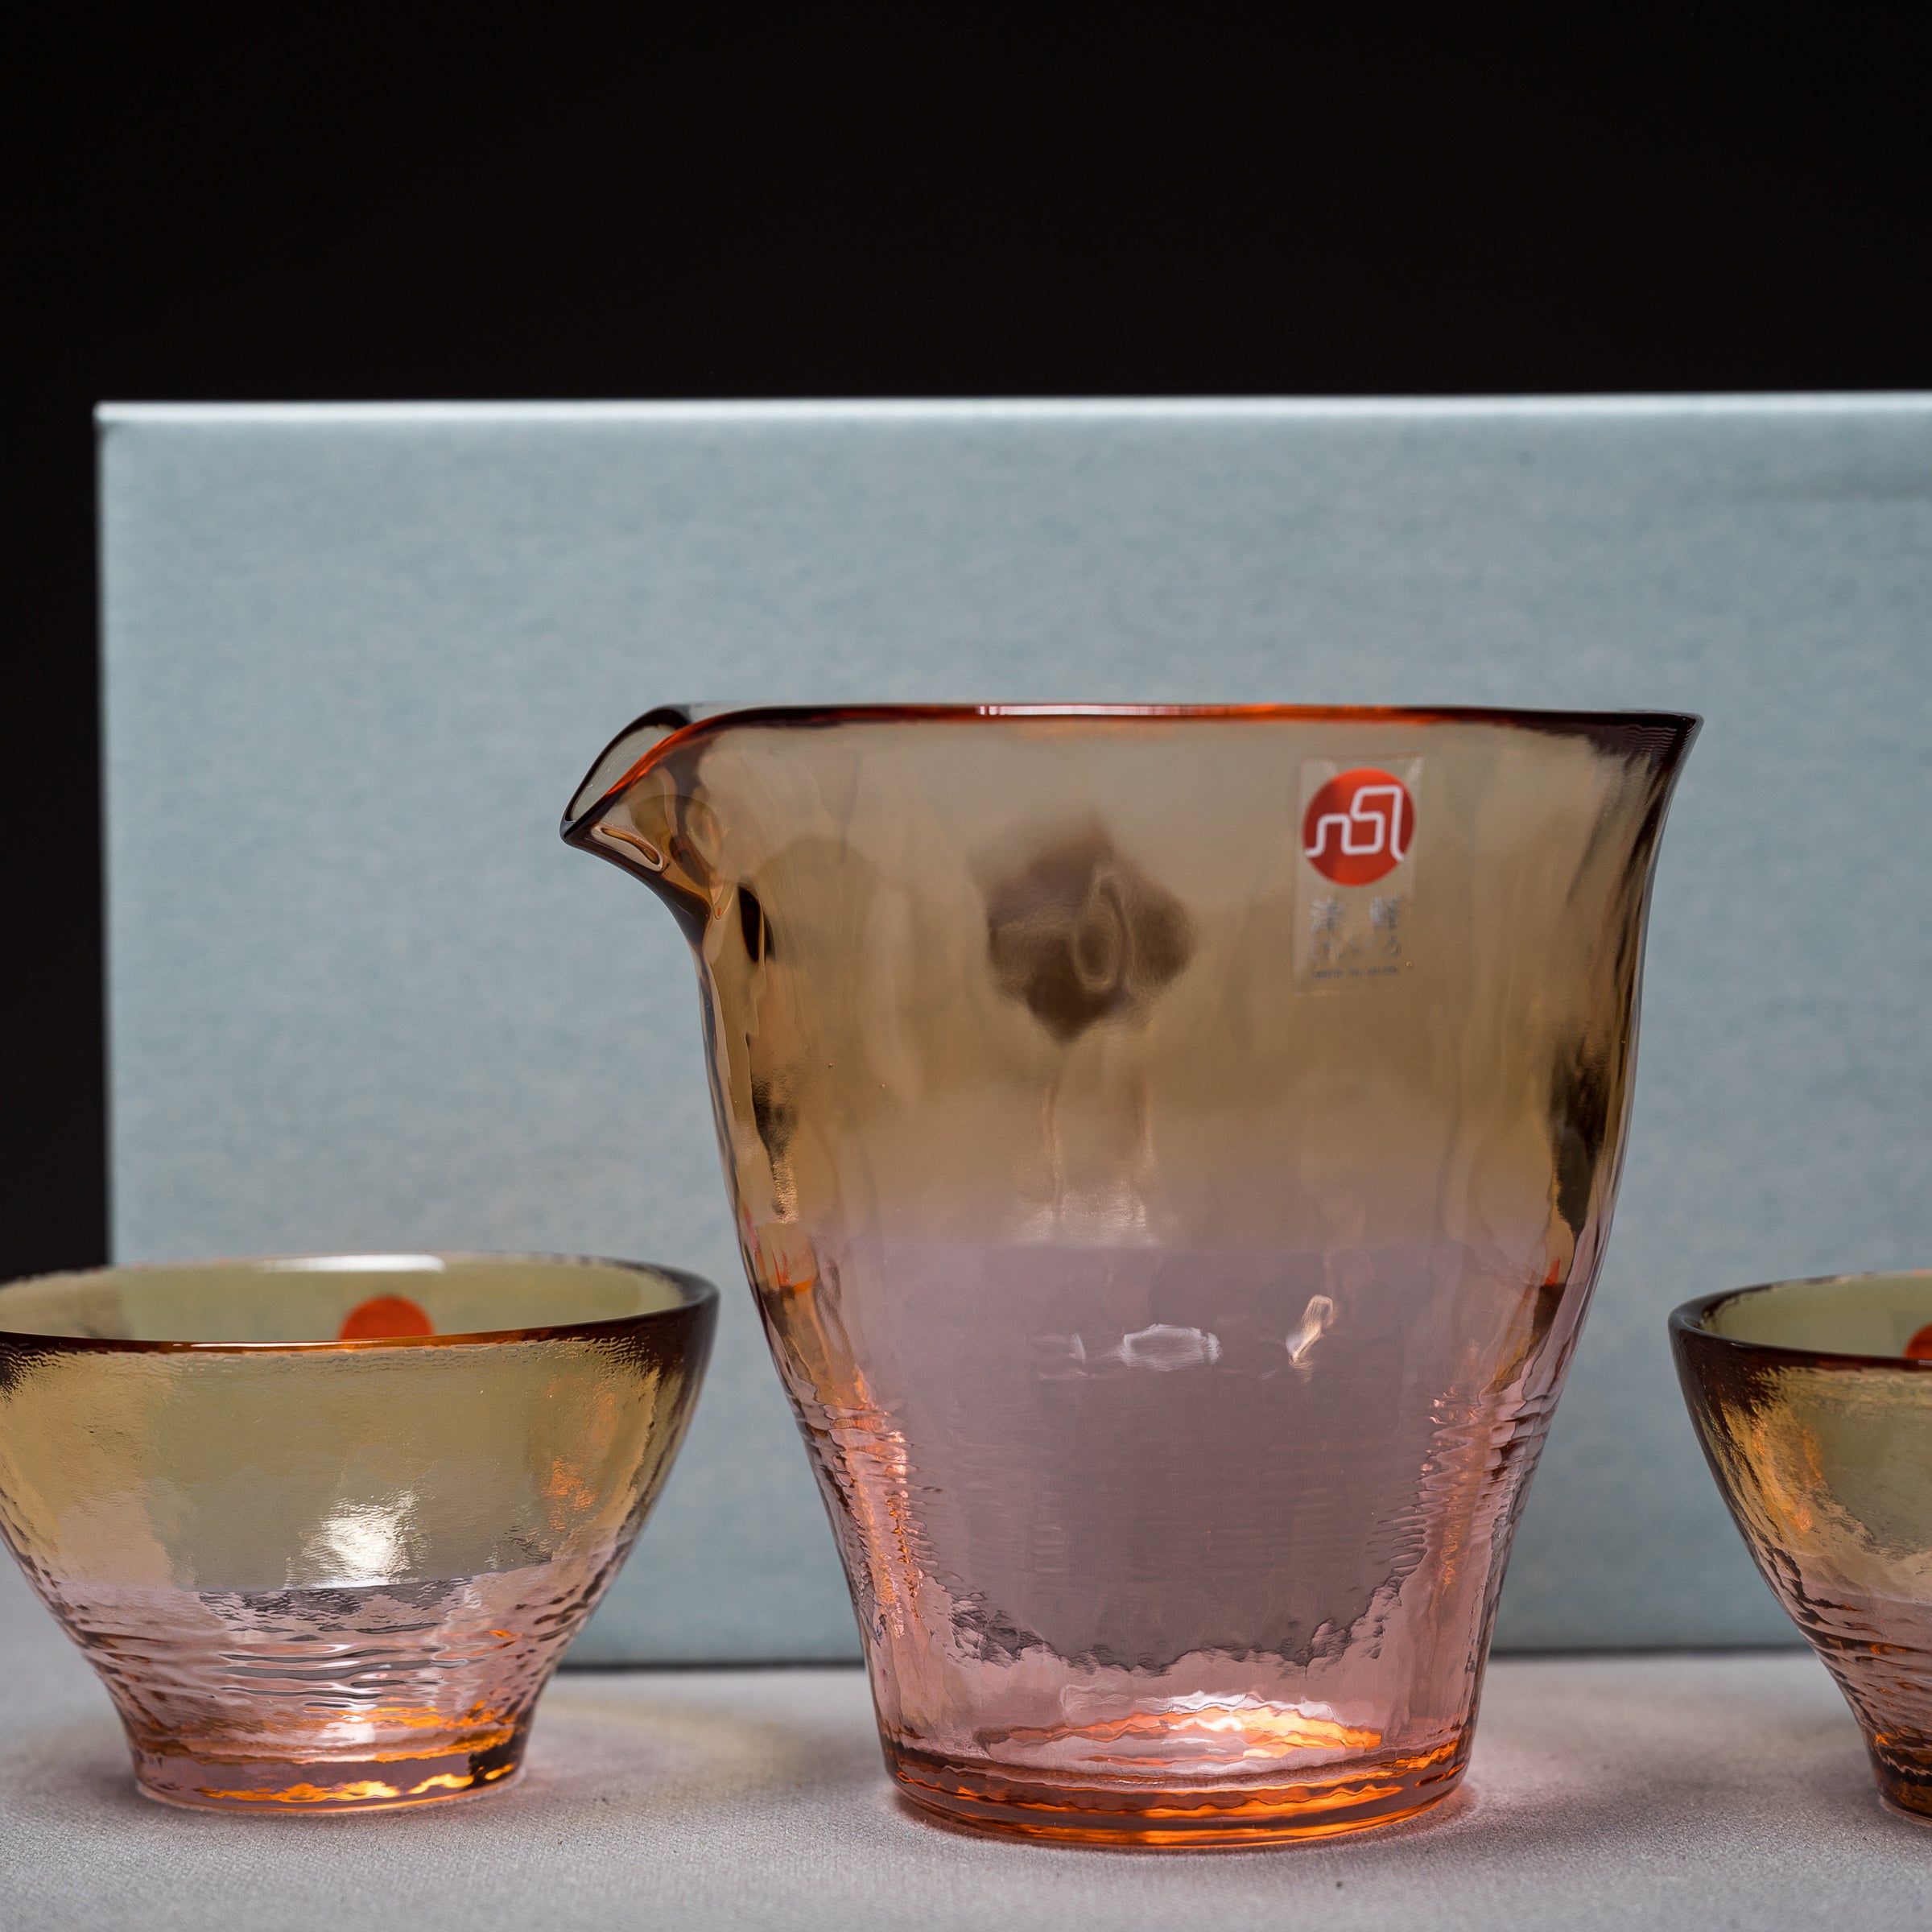 Vidro Cold Sake Set - Pink / 津軽びいどろ 冷酒セット